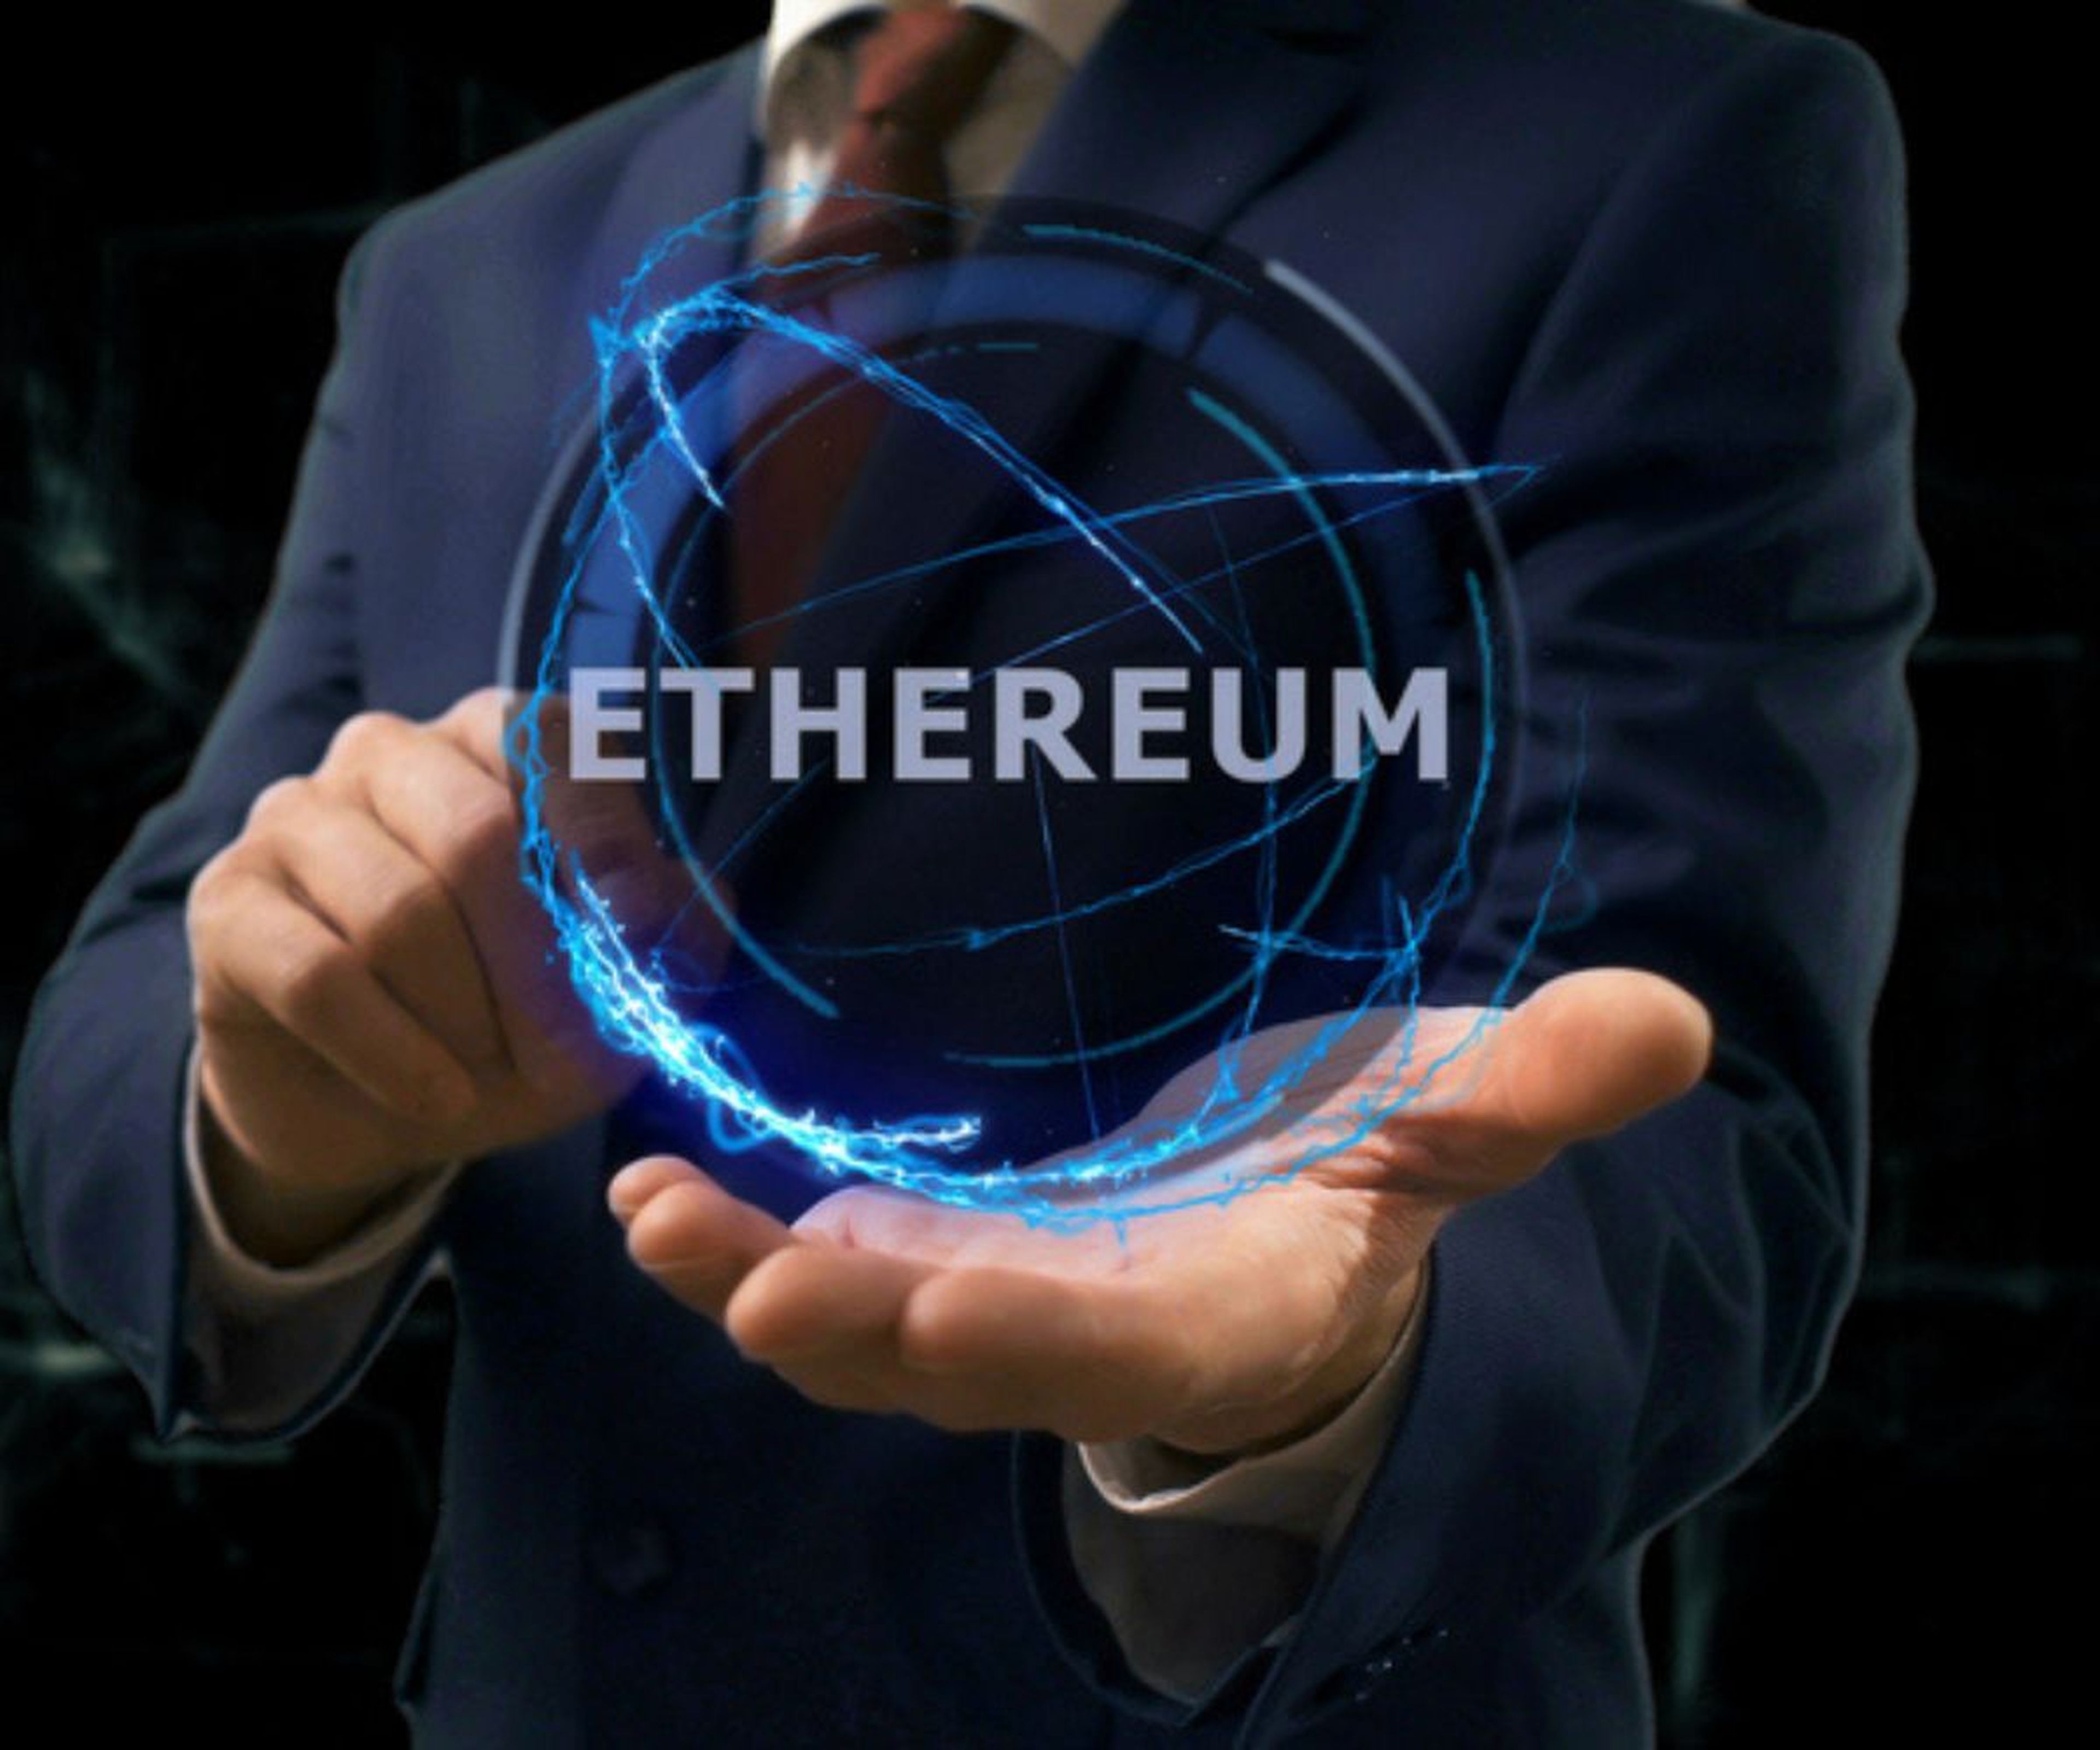 Una persona muestra un holograma con el nombre de Ethereum.